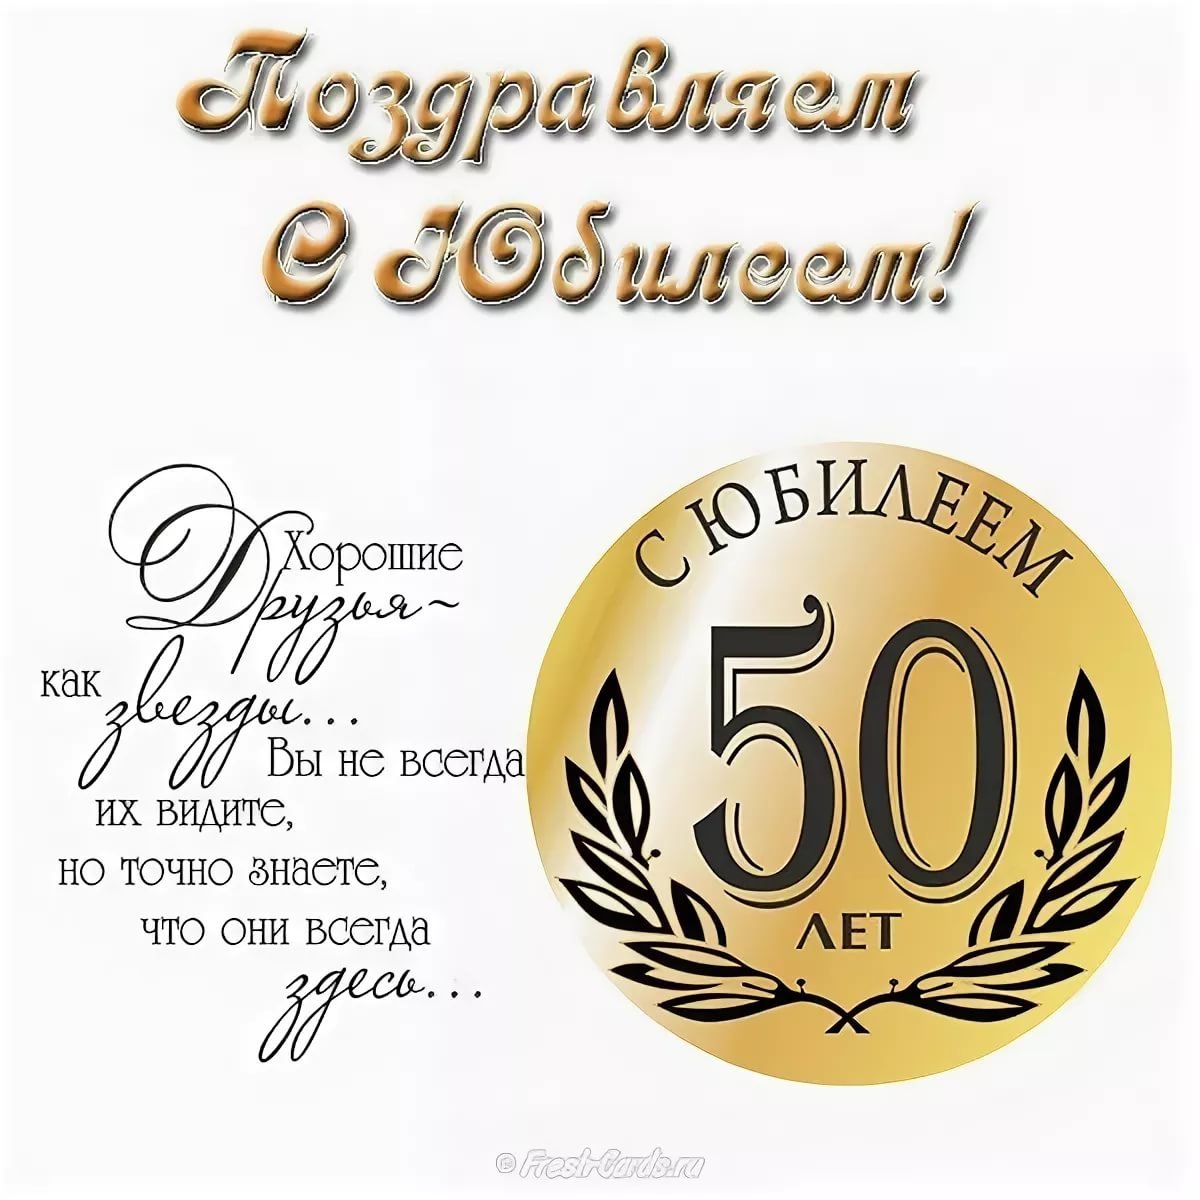 Поздравляем с юбилеем 50-летия фирмы (организации)